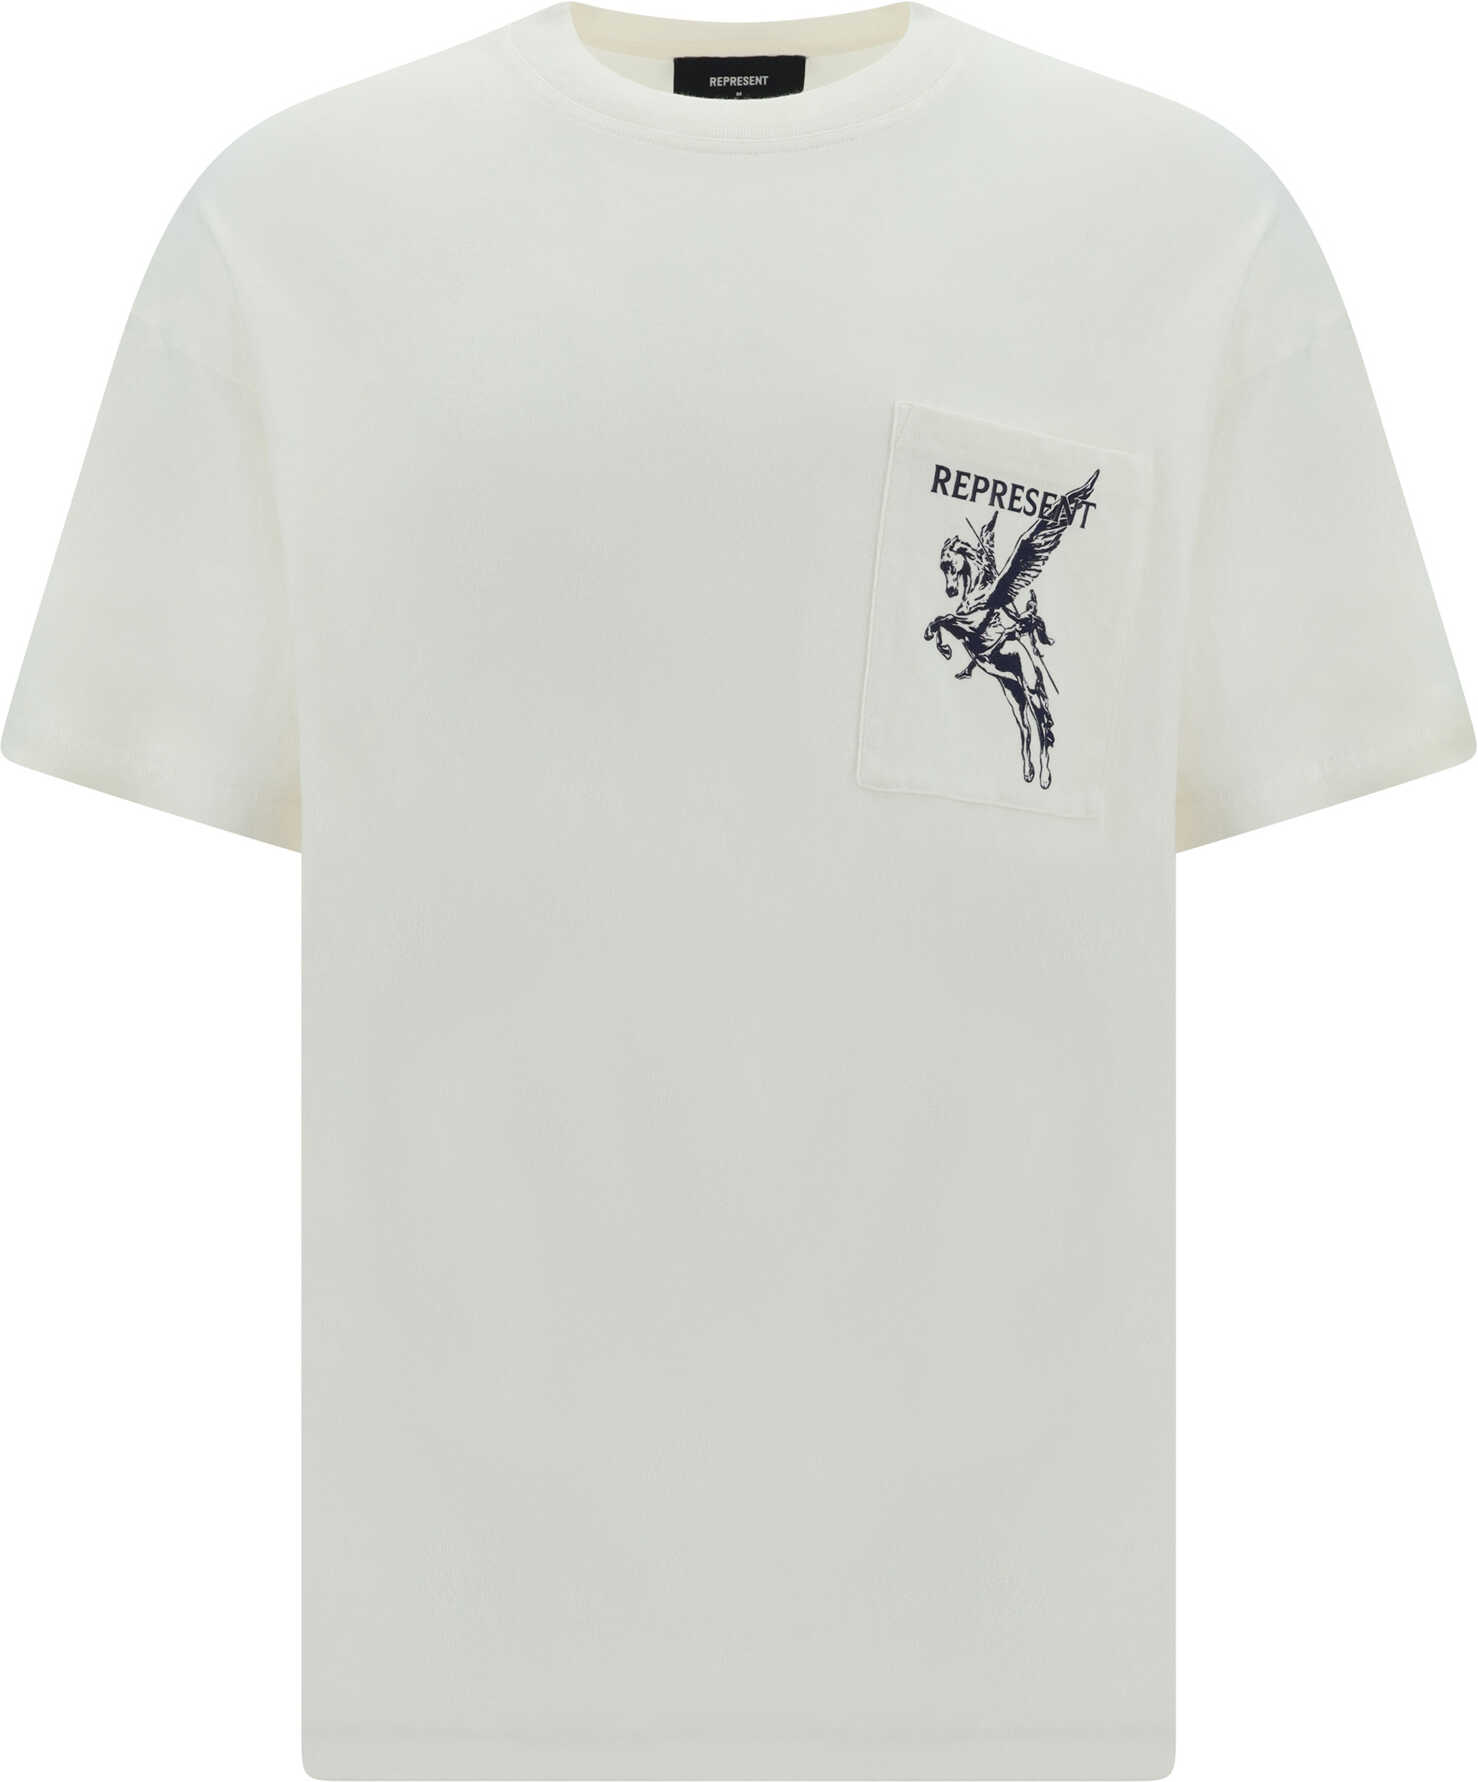 REPRESENT T-Shirt FLAT WHITE